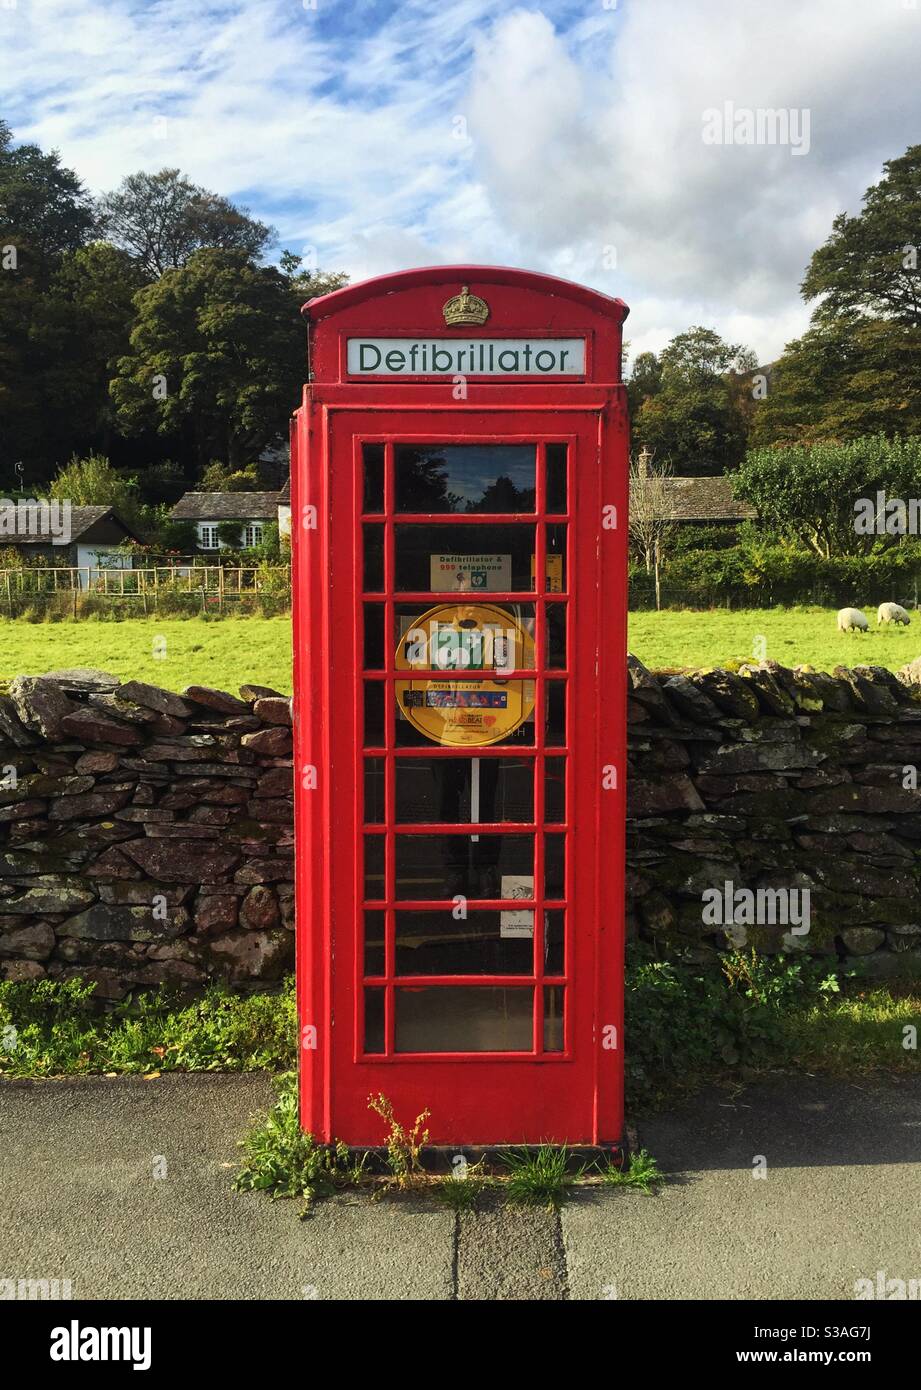 Une boîte téléphonique britannique rouge qui a été convertie en Une station de défibrillation à usage public dans la campagne britannique Banque D'Images